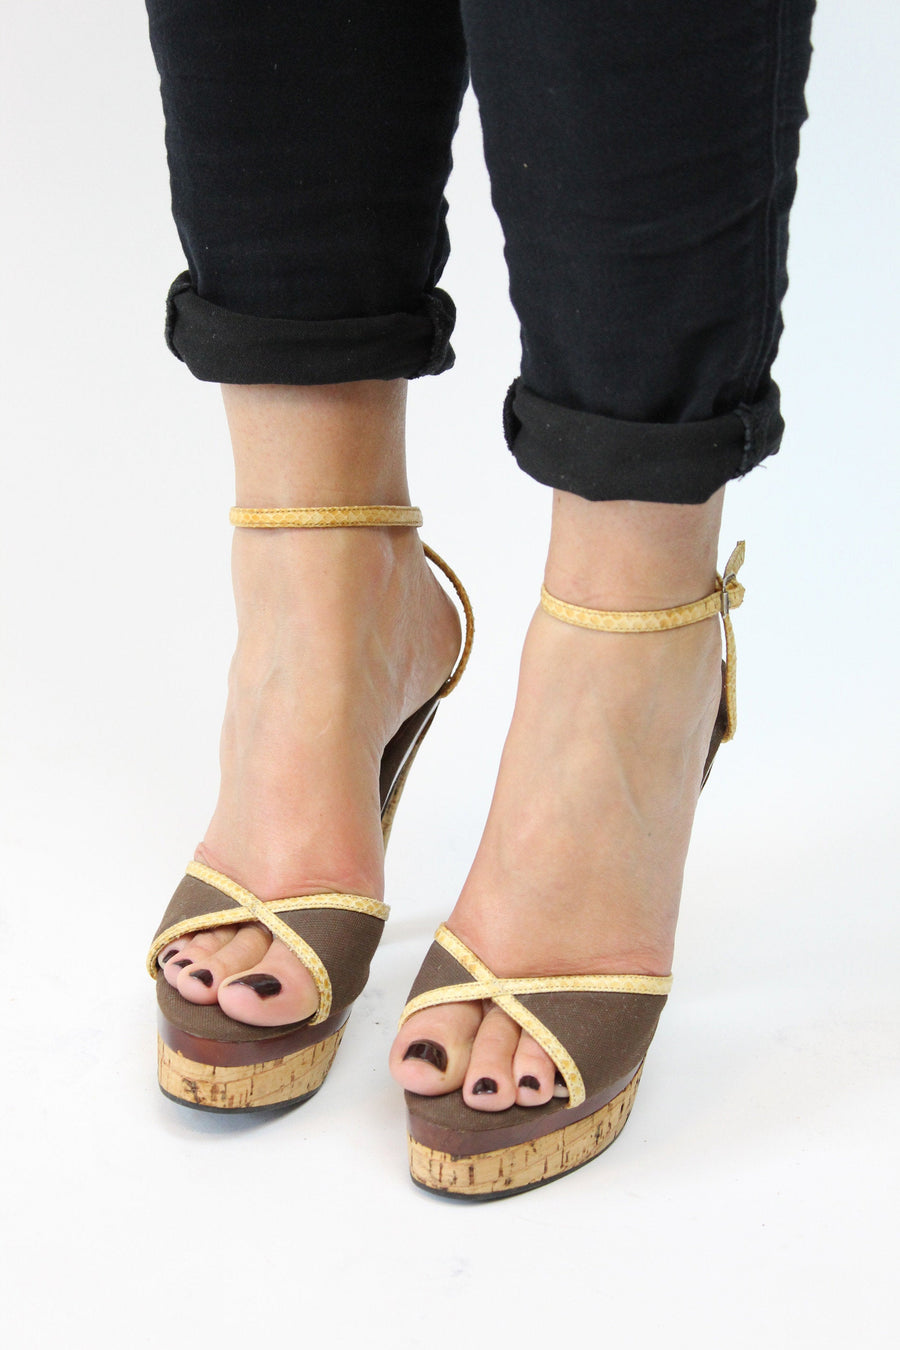 1970s platform shoes | cork heels ankle strap | size 5